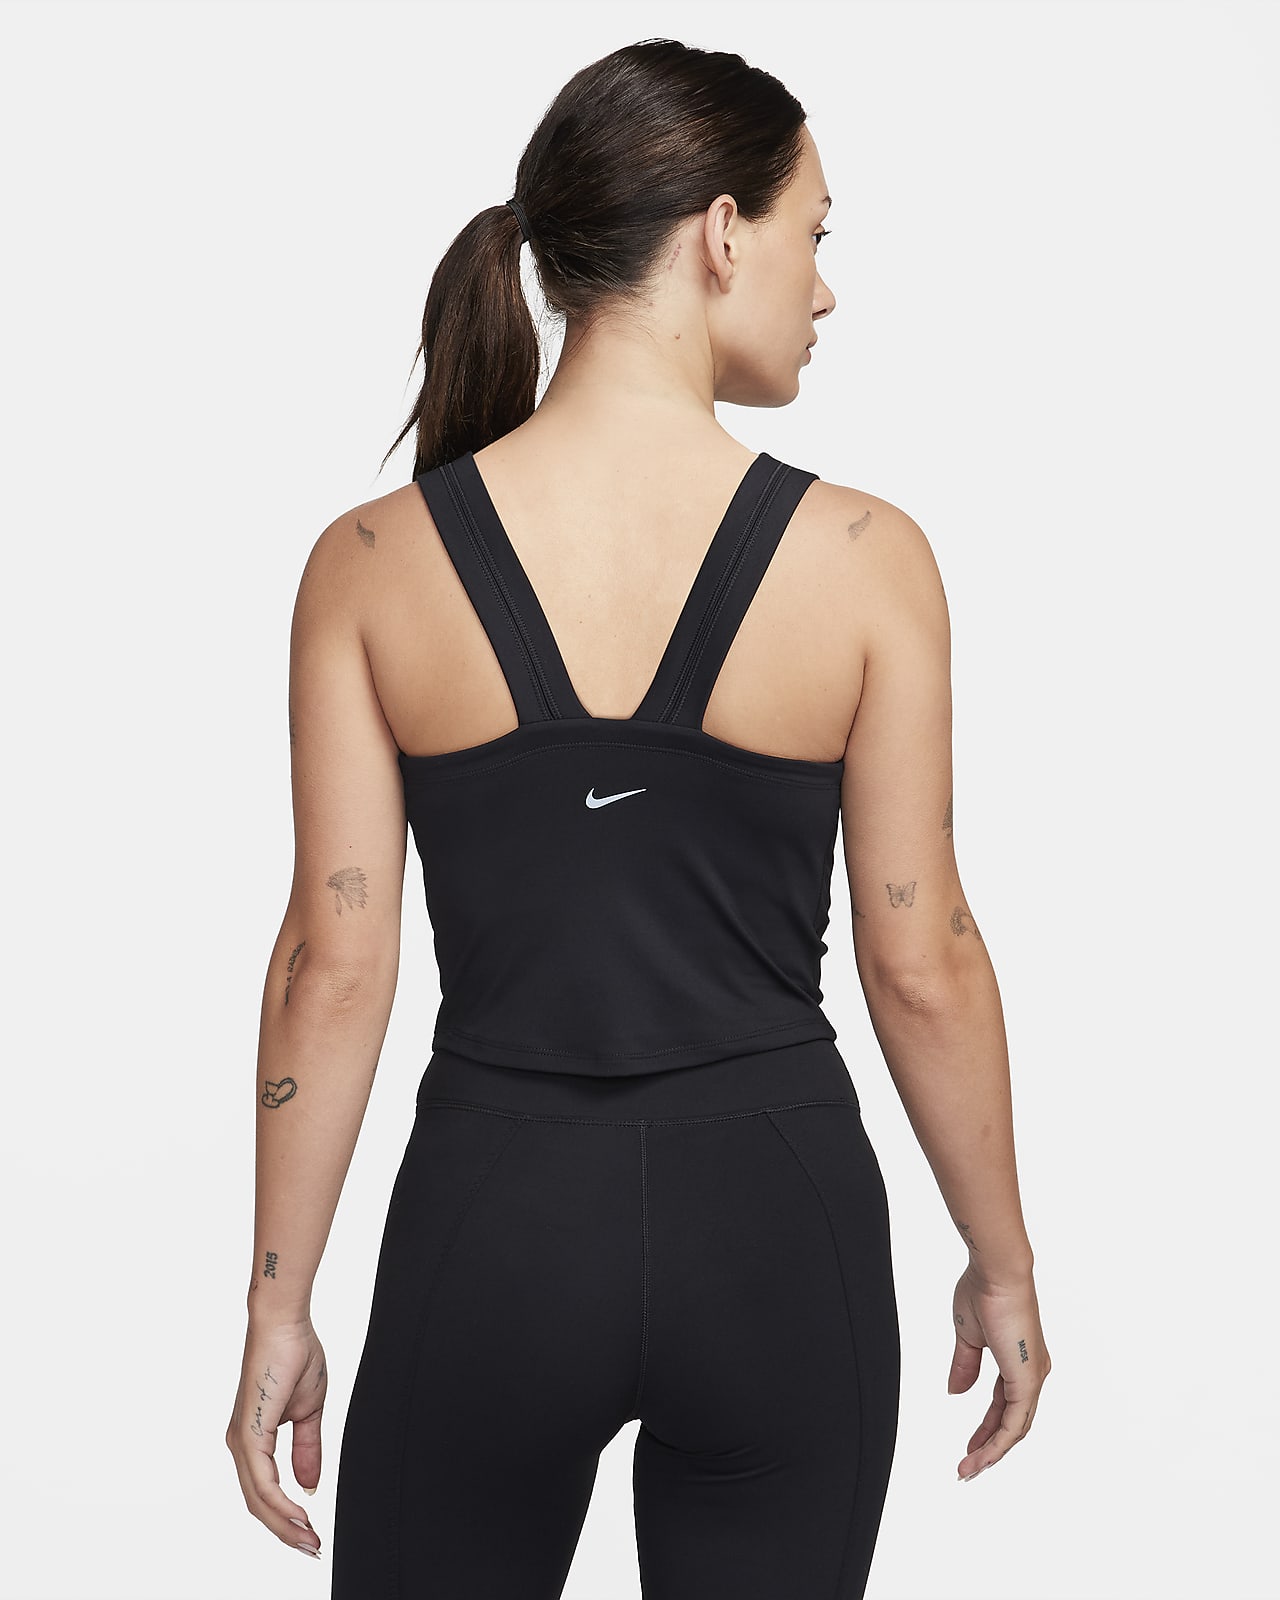 Nike Pro Dri-Fit Women's Size XL Lime Ice Shelf-Bra Cropped Tank Top $50  NWT